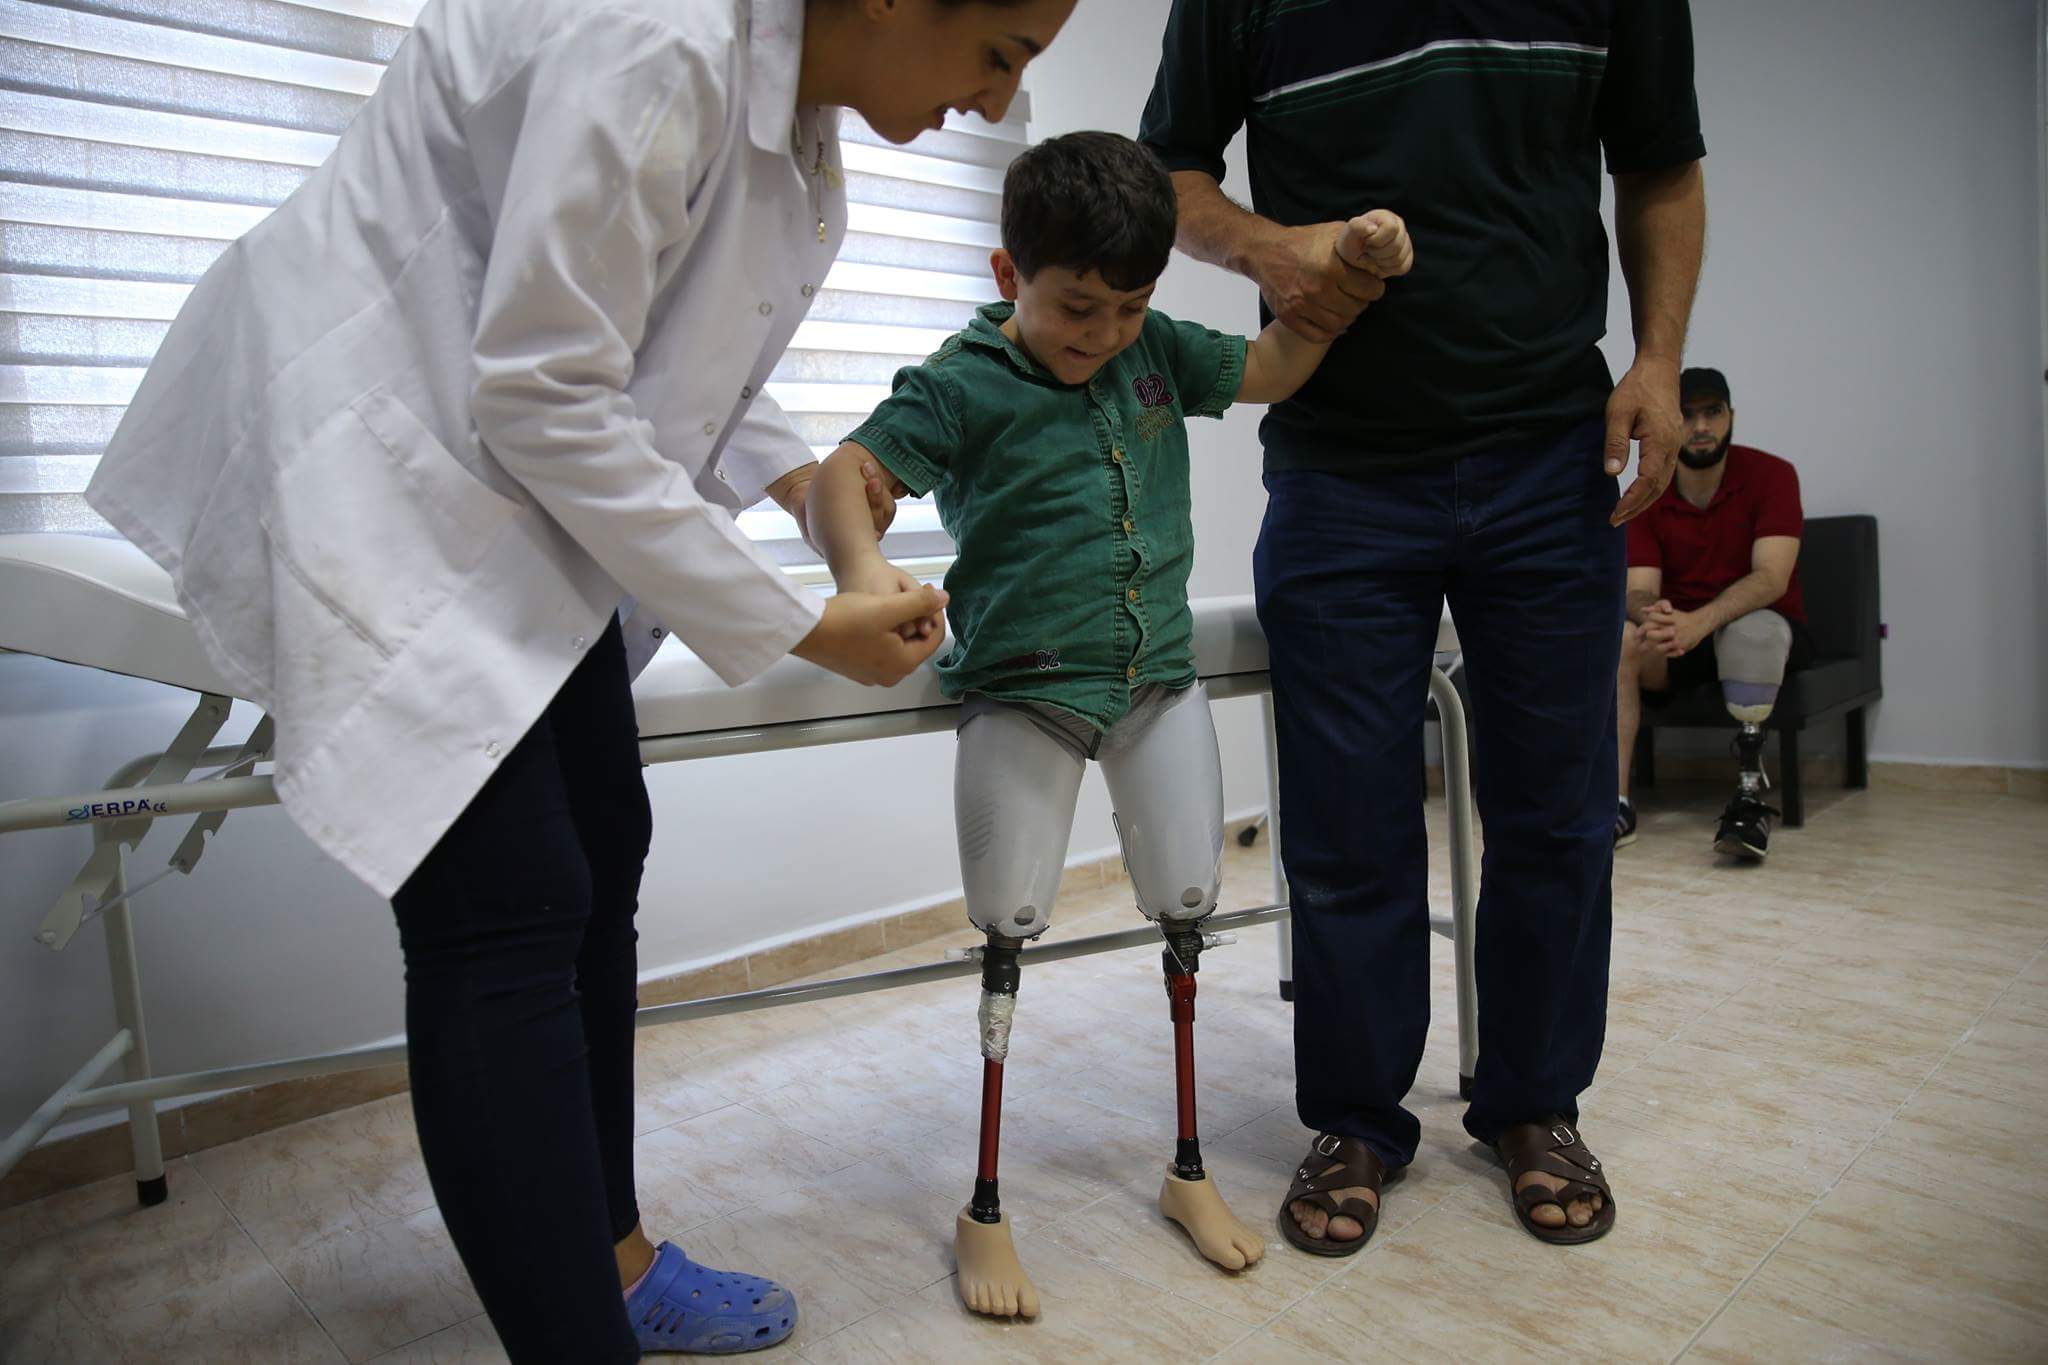 شاهد بالصور: الطفل السوري عبد الباسط الصطوف صاحب صرخة “يا بابا شيلني” يقف على قدميه الاصطناعيين